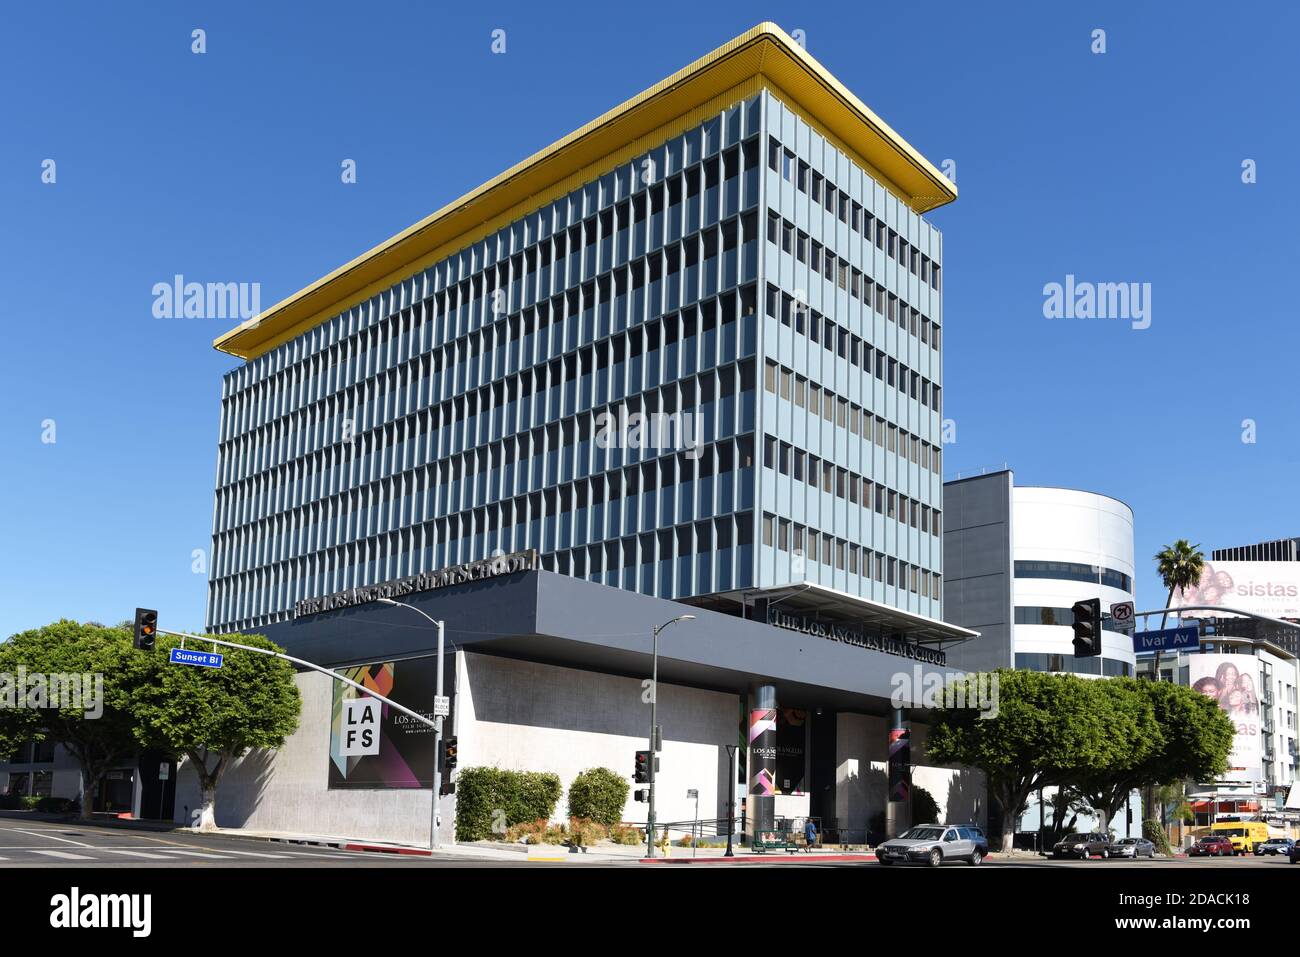 HOLLYWOOD, CALIFORNIE - 10 NOV 2020: Le bâtiment Los Angels FILM Shcool, offrant des diplômes de majors liés à l'industrie du divertissement. Banque D'Images